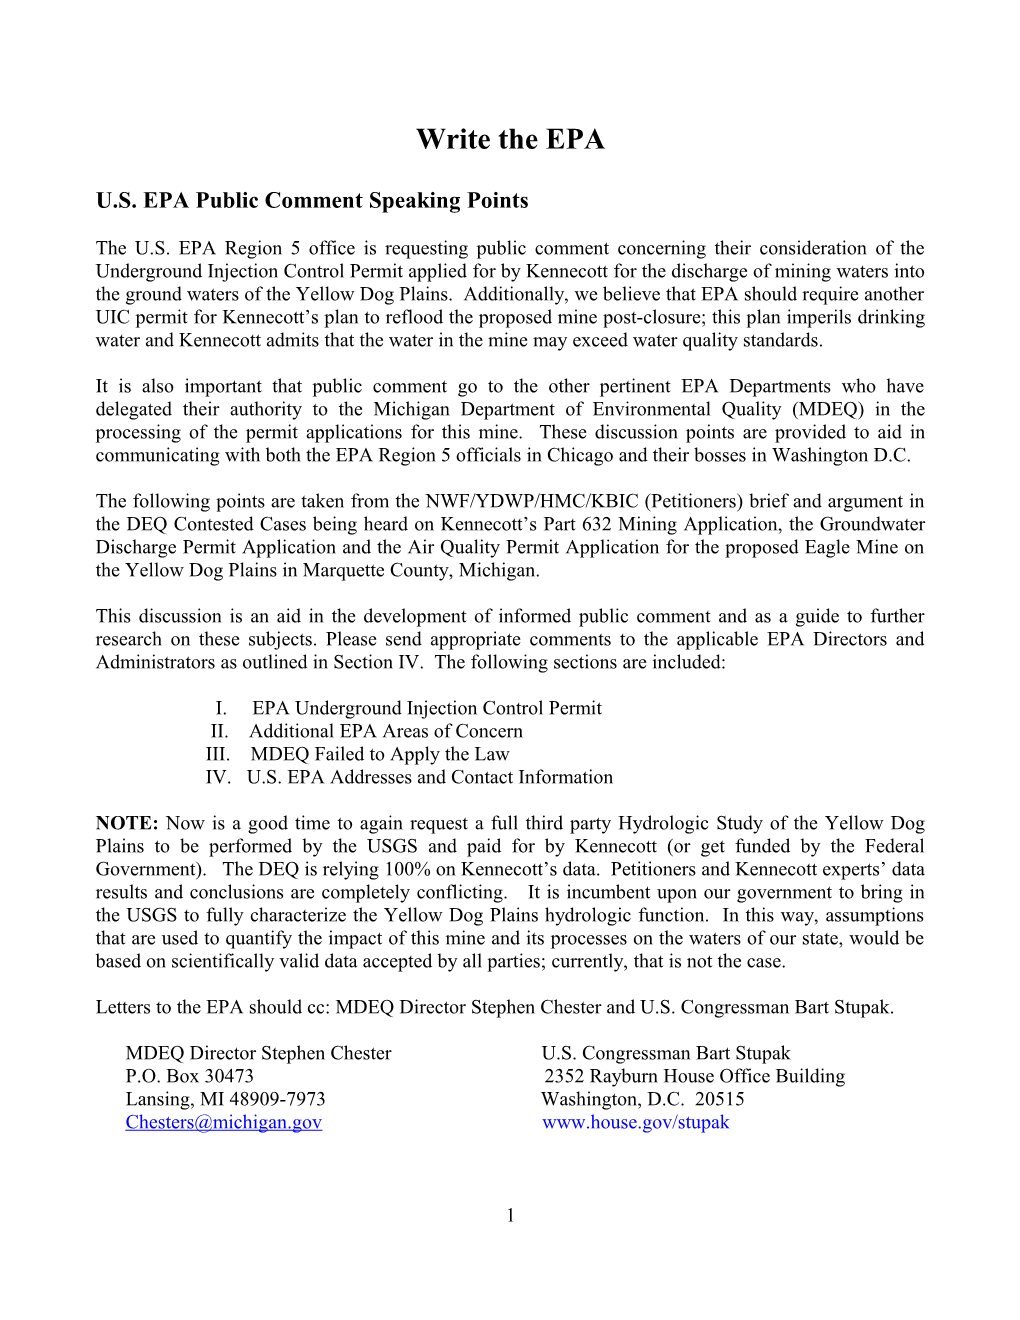 U.S. EPA Public Comment Speaking Points